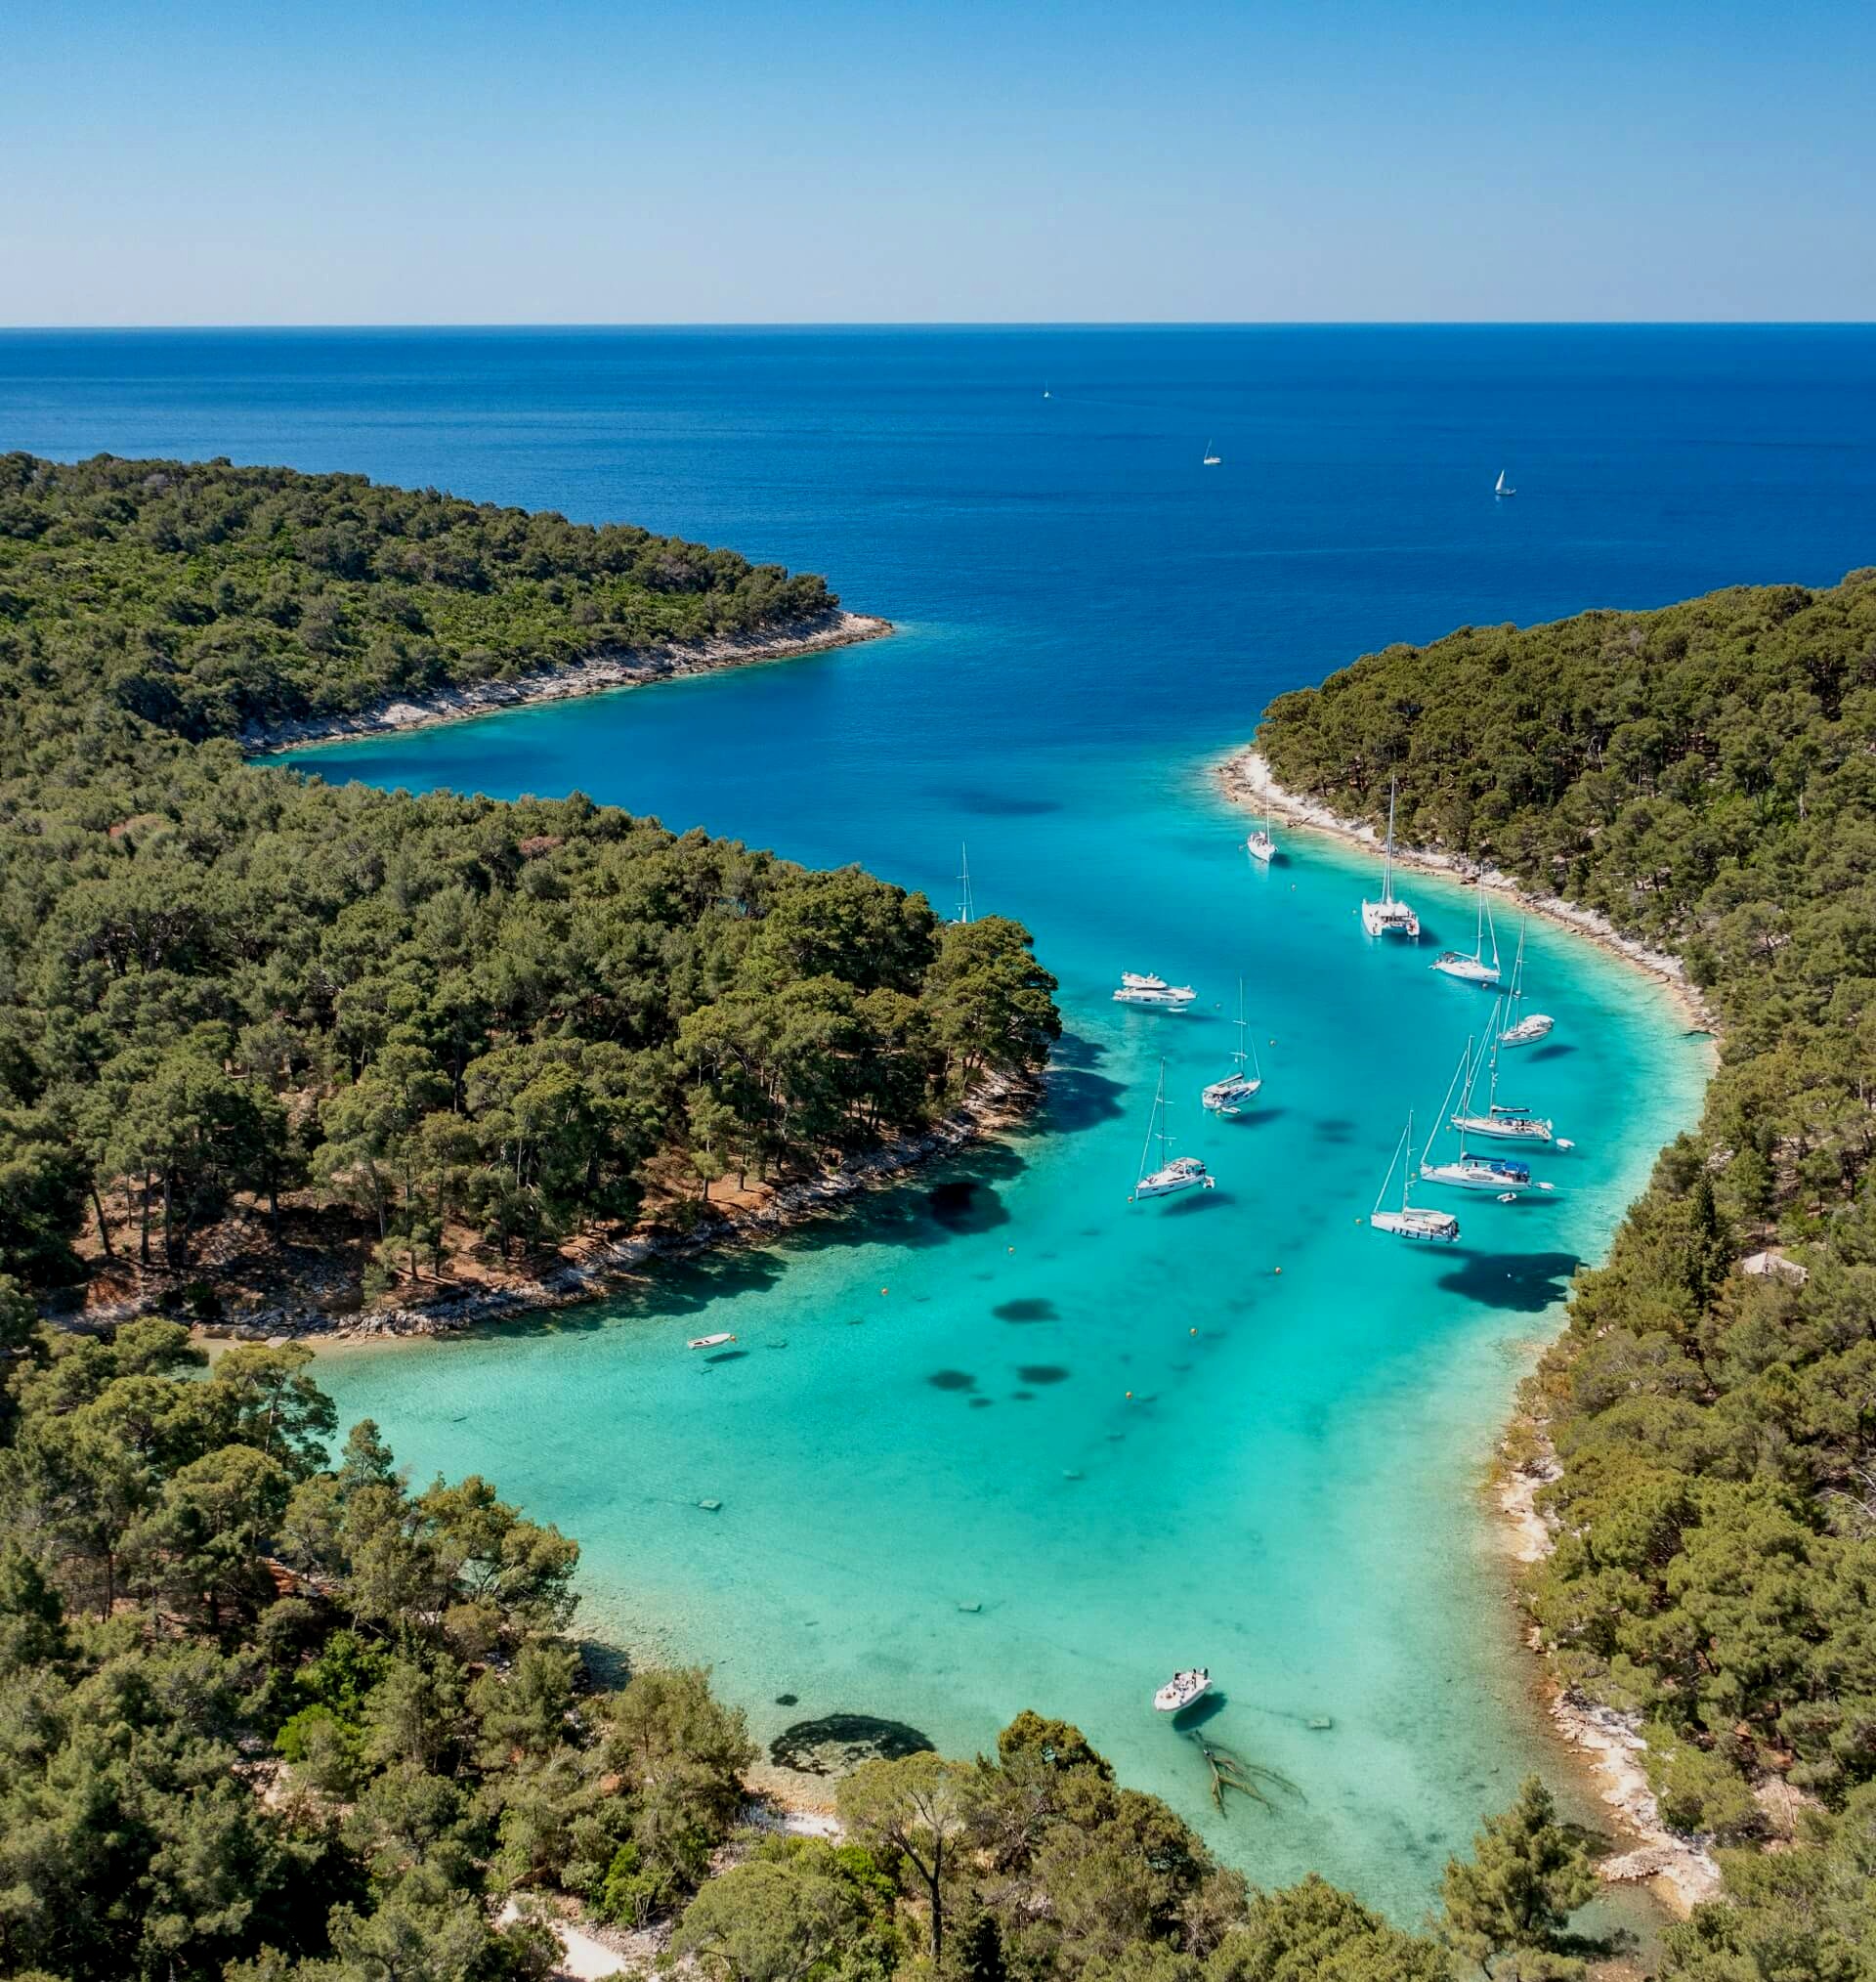 Seeking Seaside Serenity? Summer in Split, Croatia Is a Coastal Dream